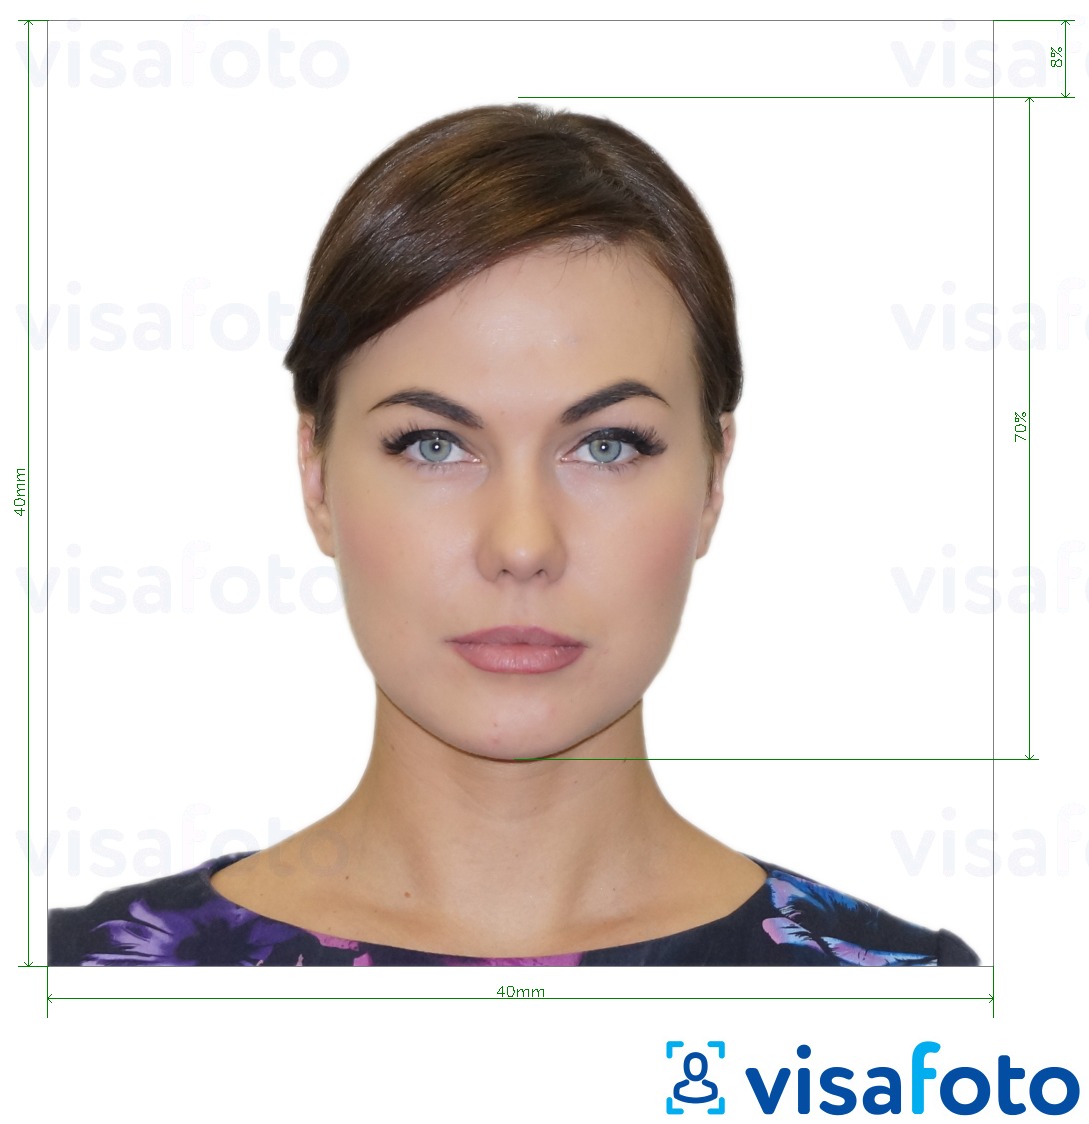 نمونه ی یک عکس برای پاسپورت آرژانتین 4x4 سانتی متر (40x40 میلی متر) با مشخصات دقیق